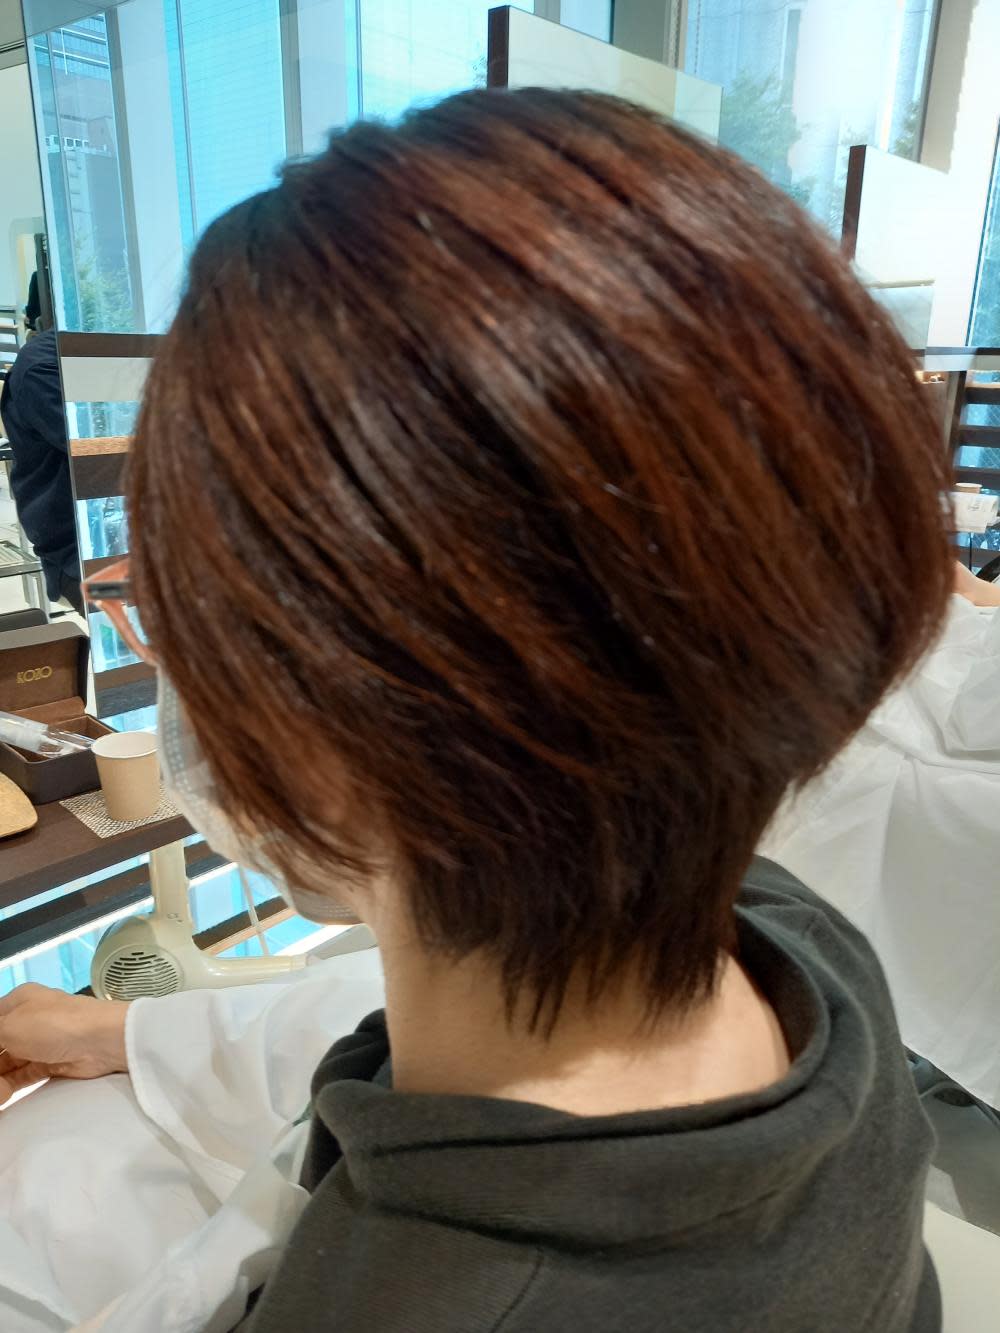 M KOZO hair 東京駅PCP丸の内店【エムコーゾーヘア】のスタイル紹介。ウルフ/ウルフカット/ ウルフボブ